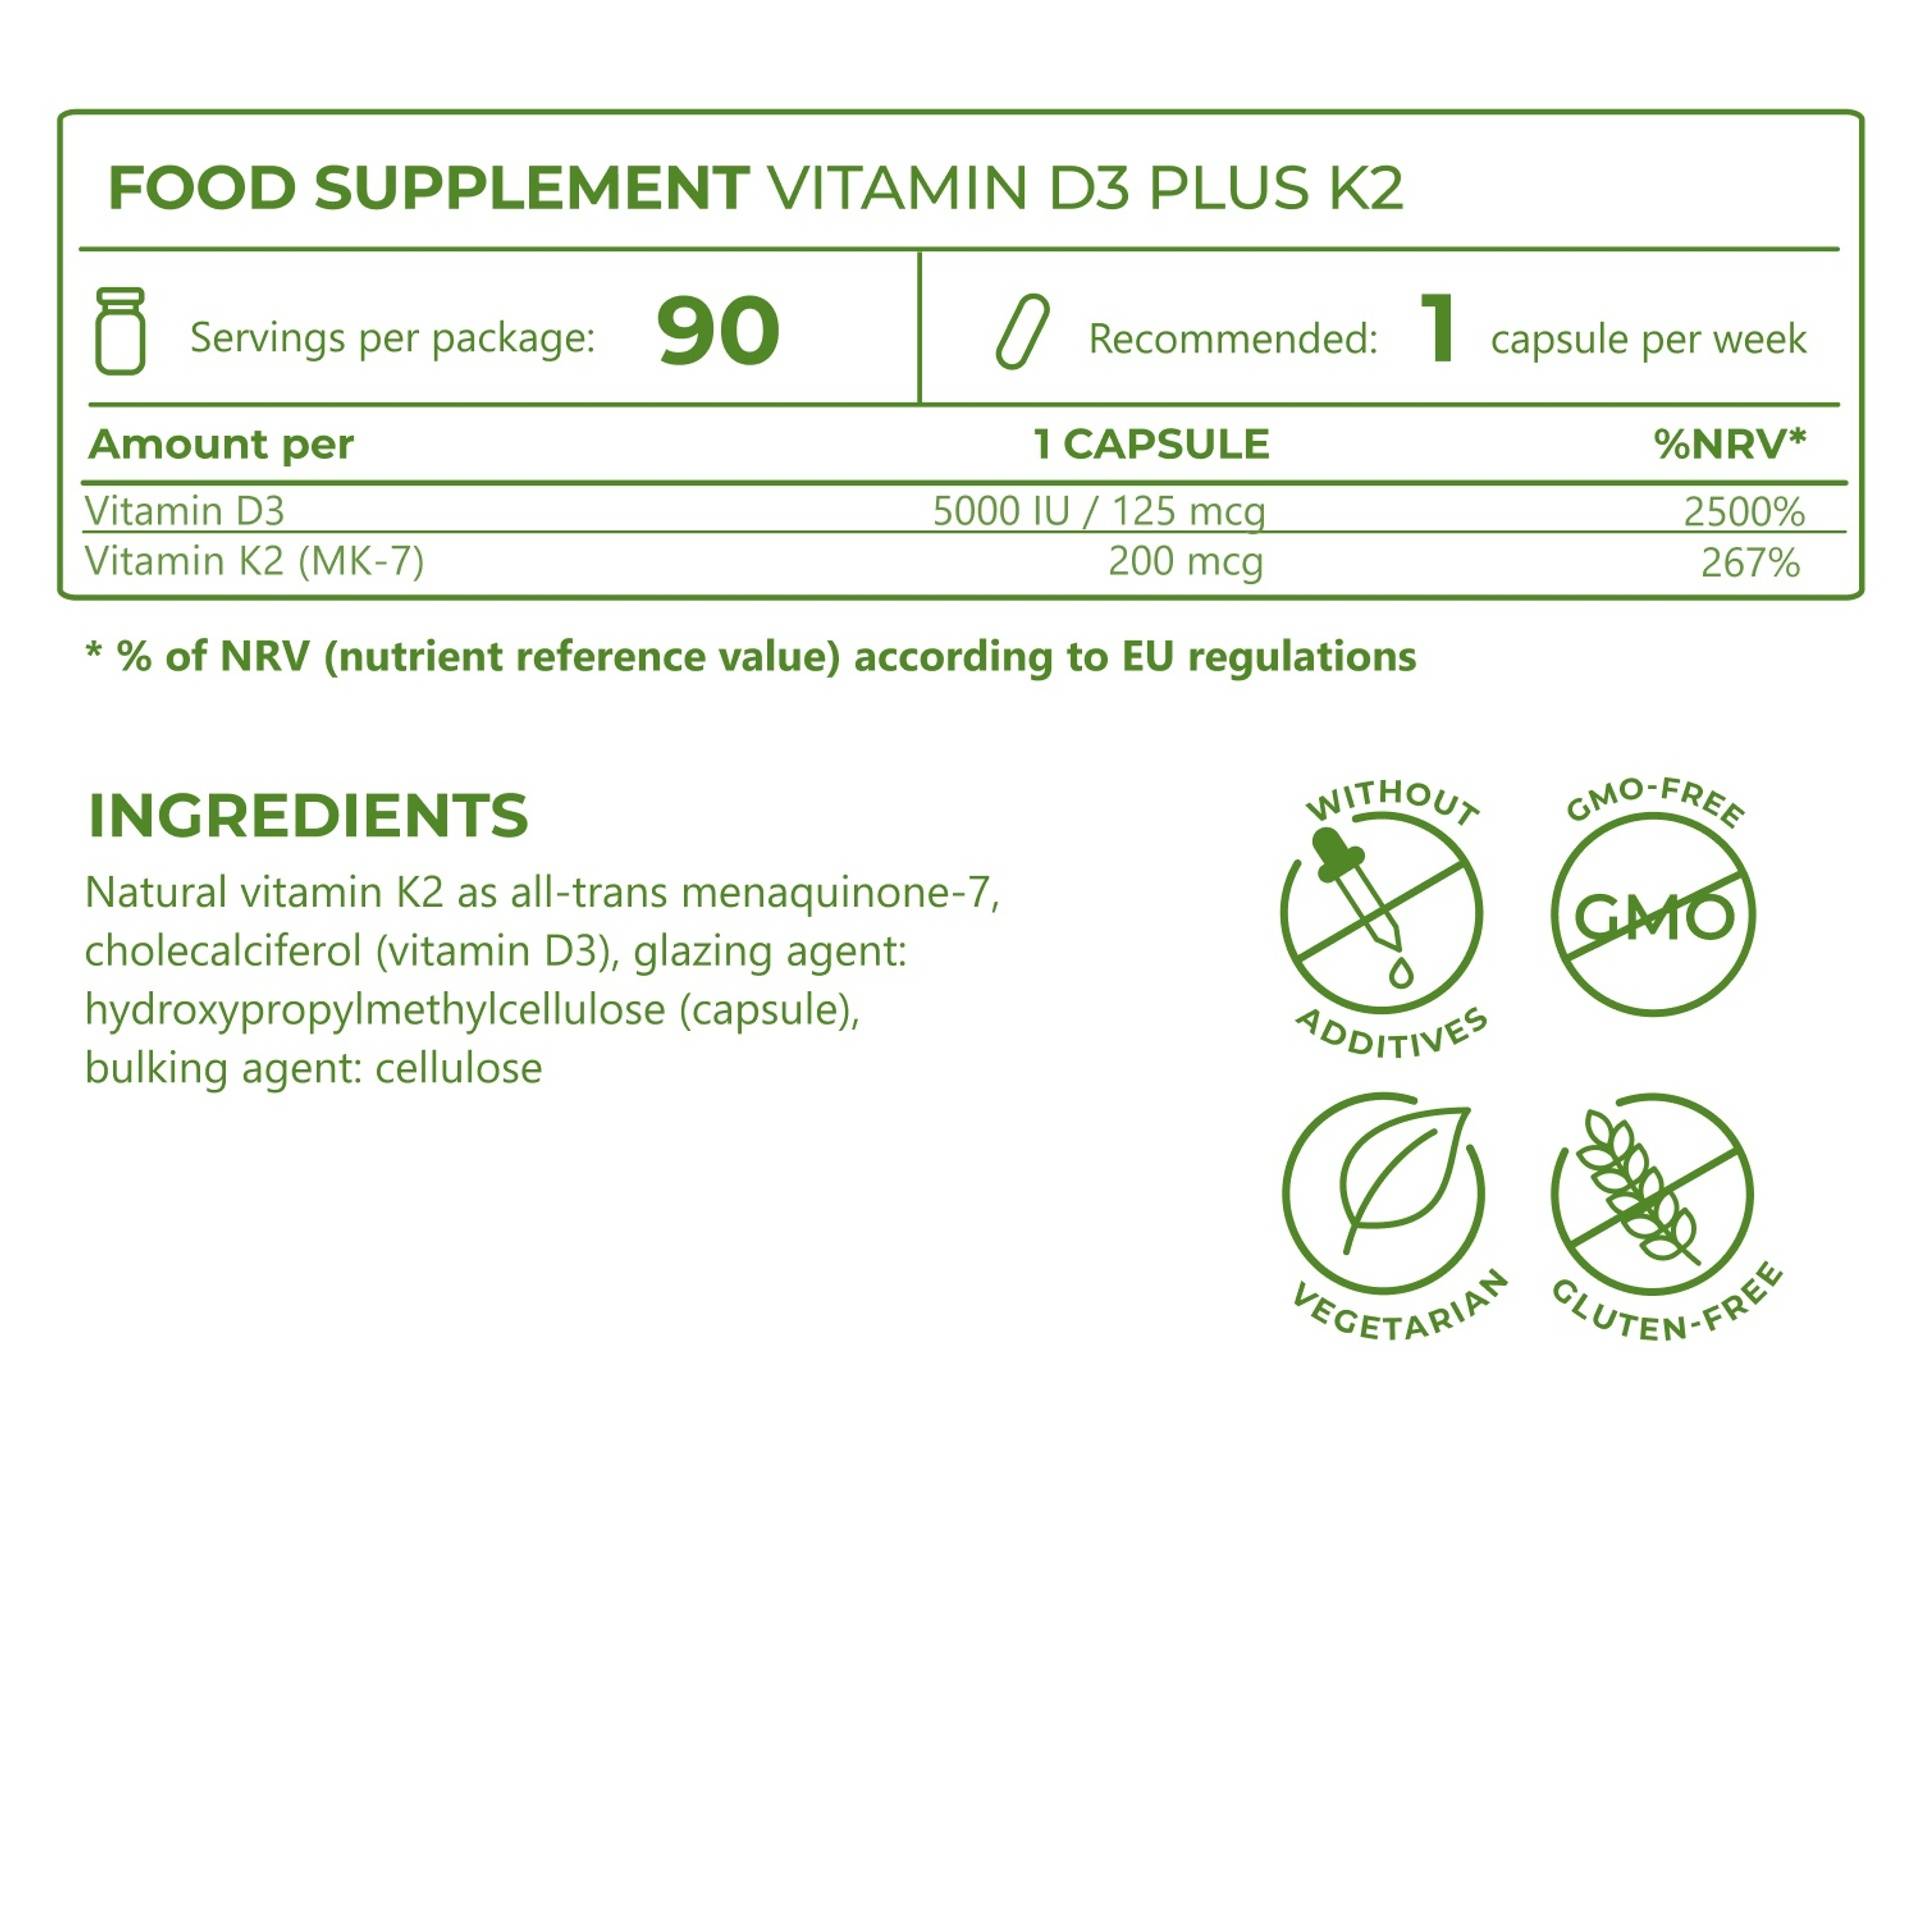 5_Ingredients_Vitamin D3 5000 plus K2 200_6942-13.png